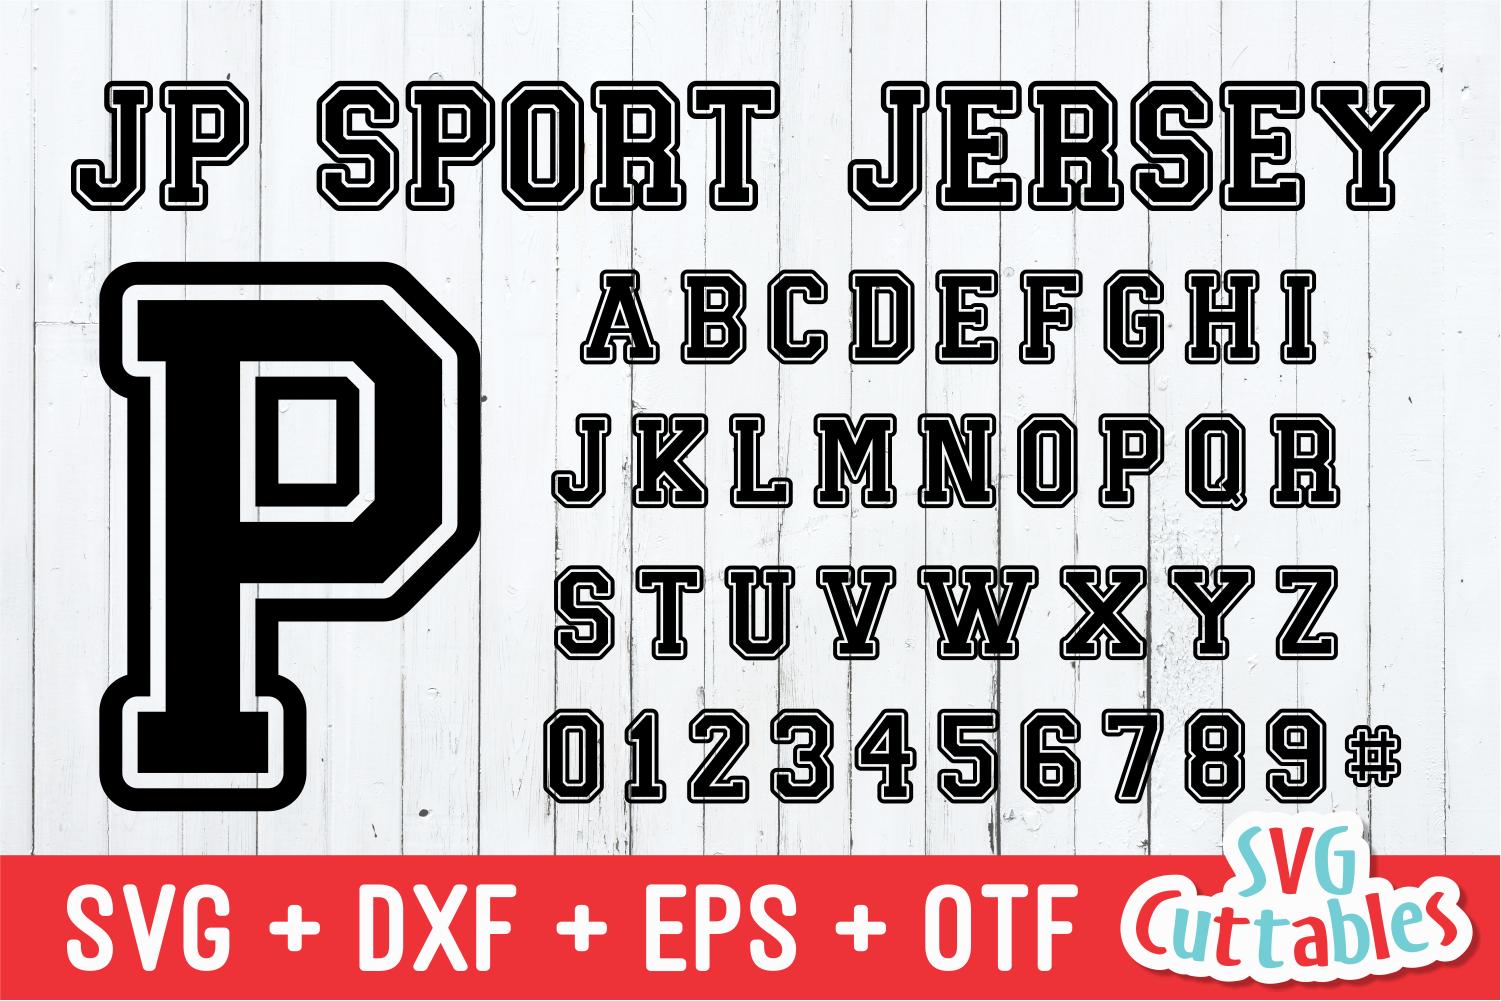 JP Sport Jersey Font